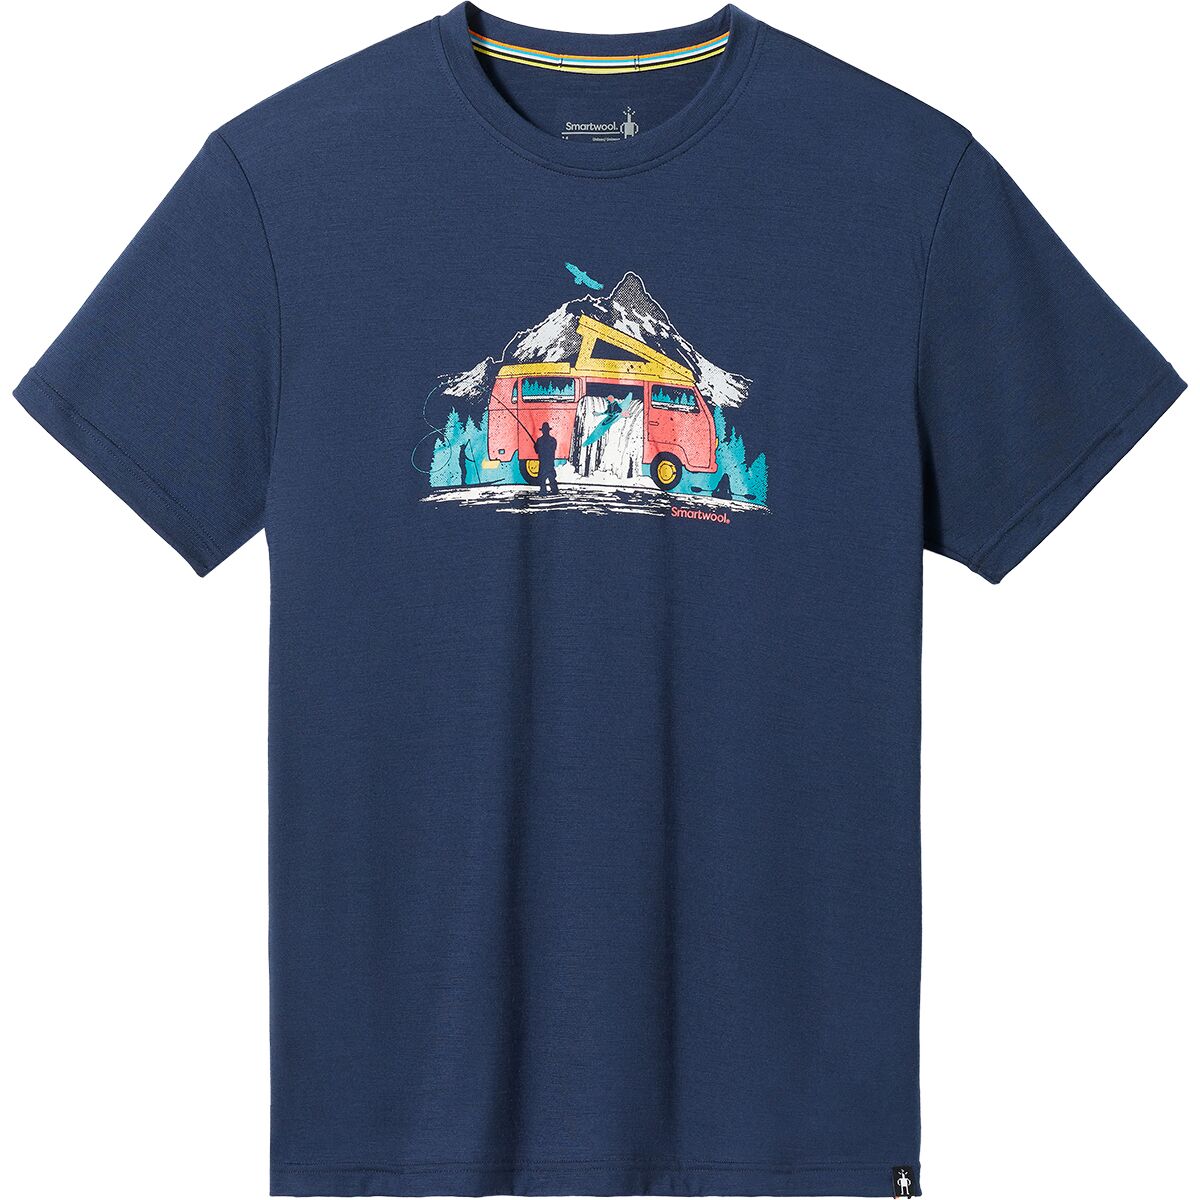 Smartwool River Van Graphic Short-Sleeve T-Shirt - Men's